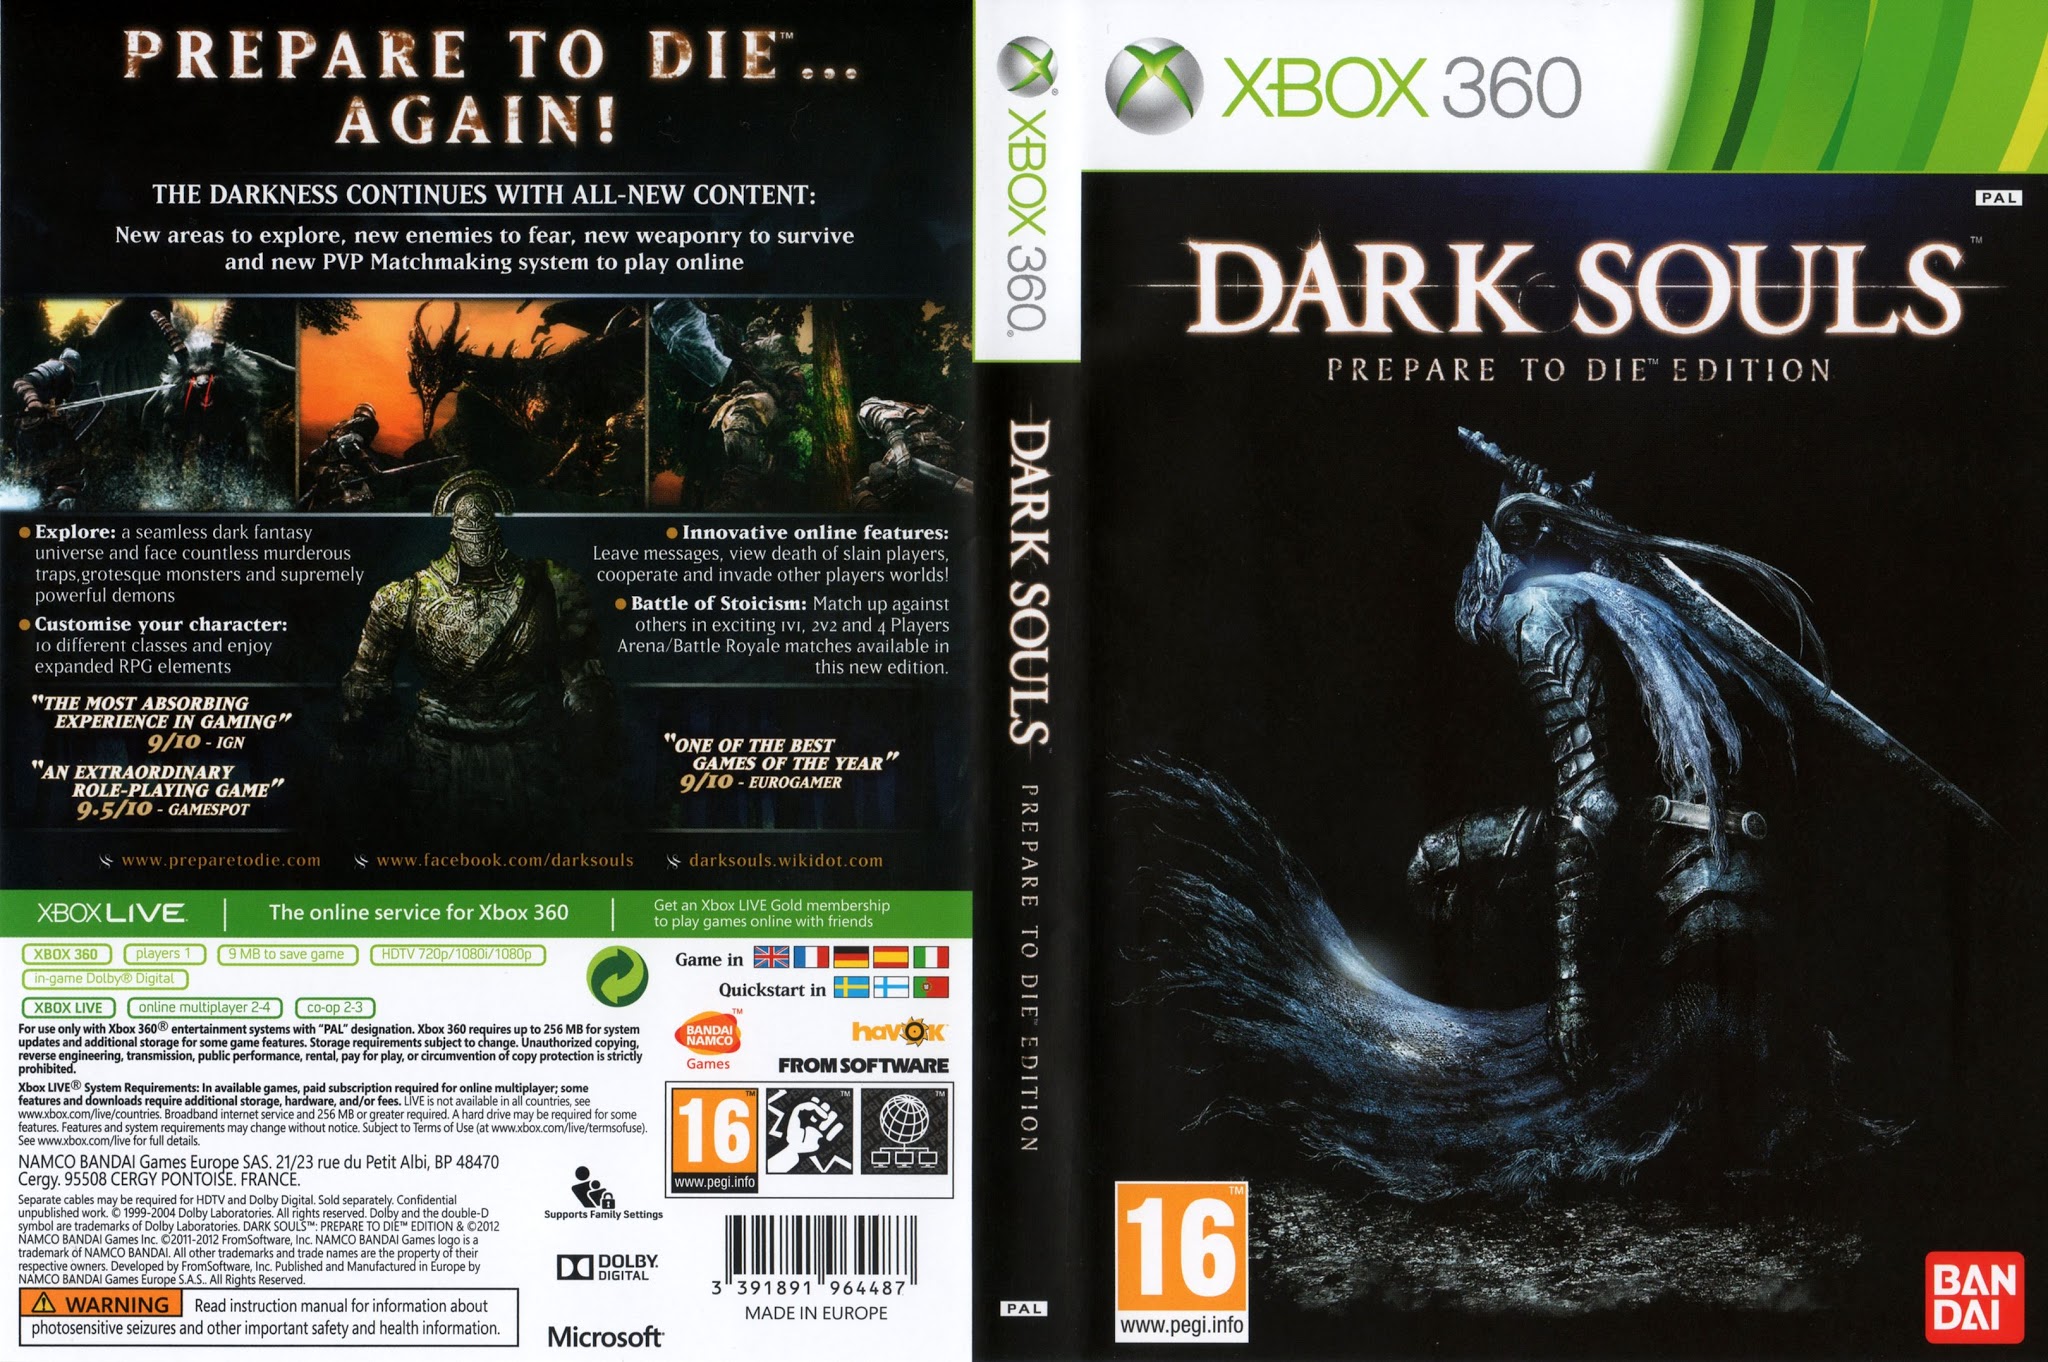 Ark souls. Dark Souls 1 Xbox 360 диск. Dark Souls II Xbox 360. Dark Souls prepare to die Xbox 360. Prepare to die Edition Dark Souls: prepare.